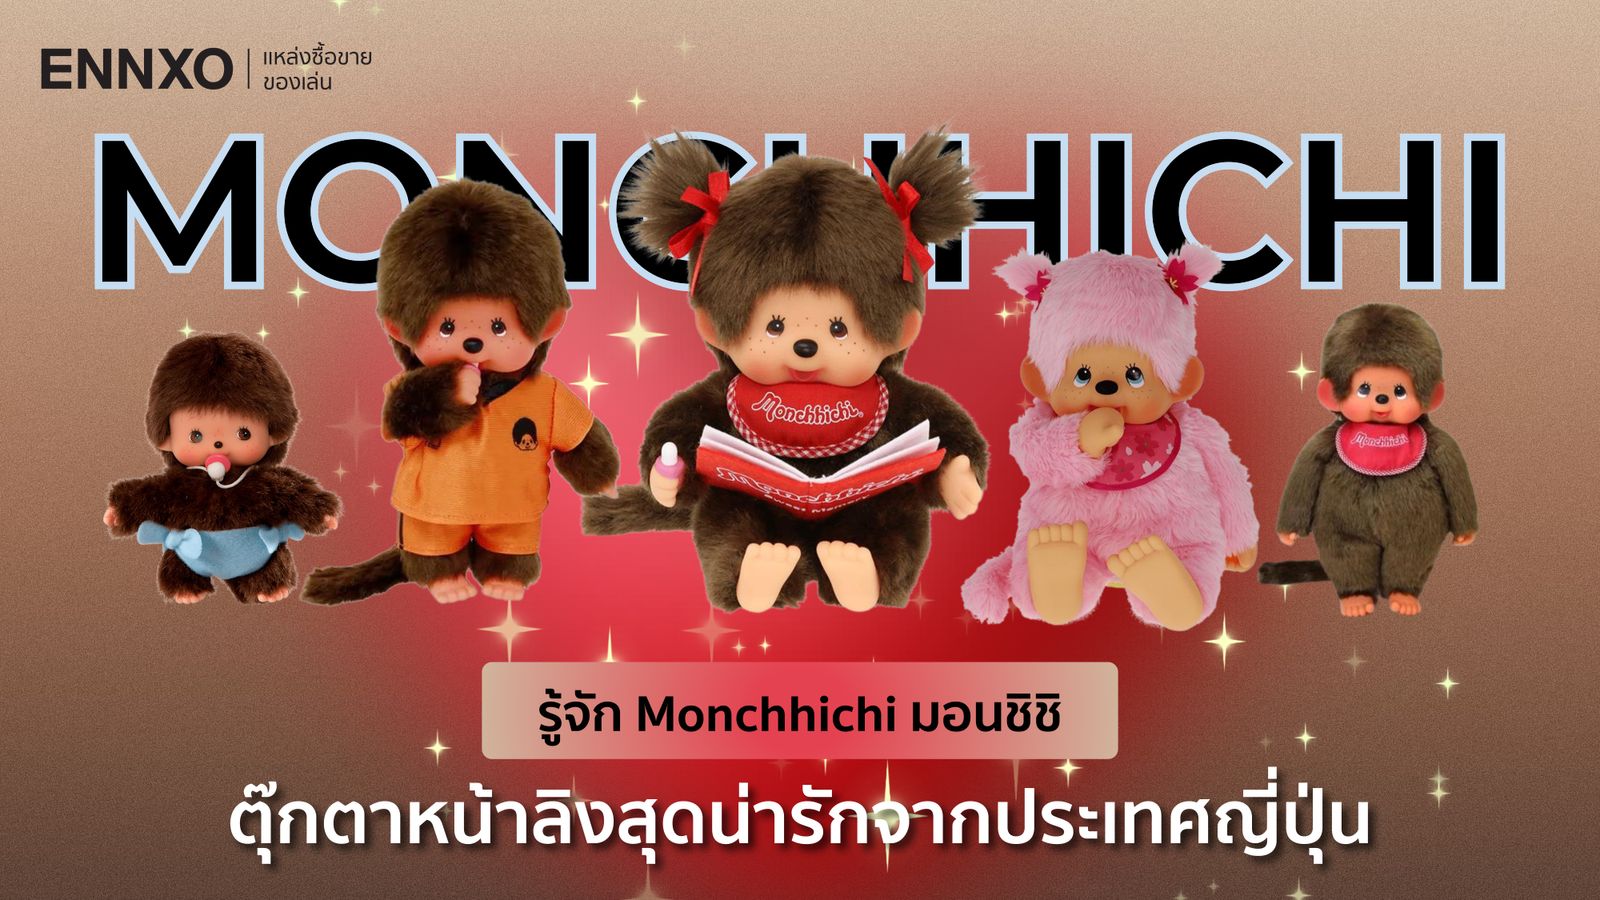 Monchhichi story ประวัติมอนชิชิ ตุ๊กตาหน้าลิง